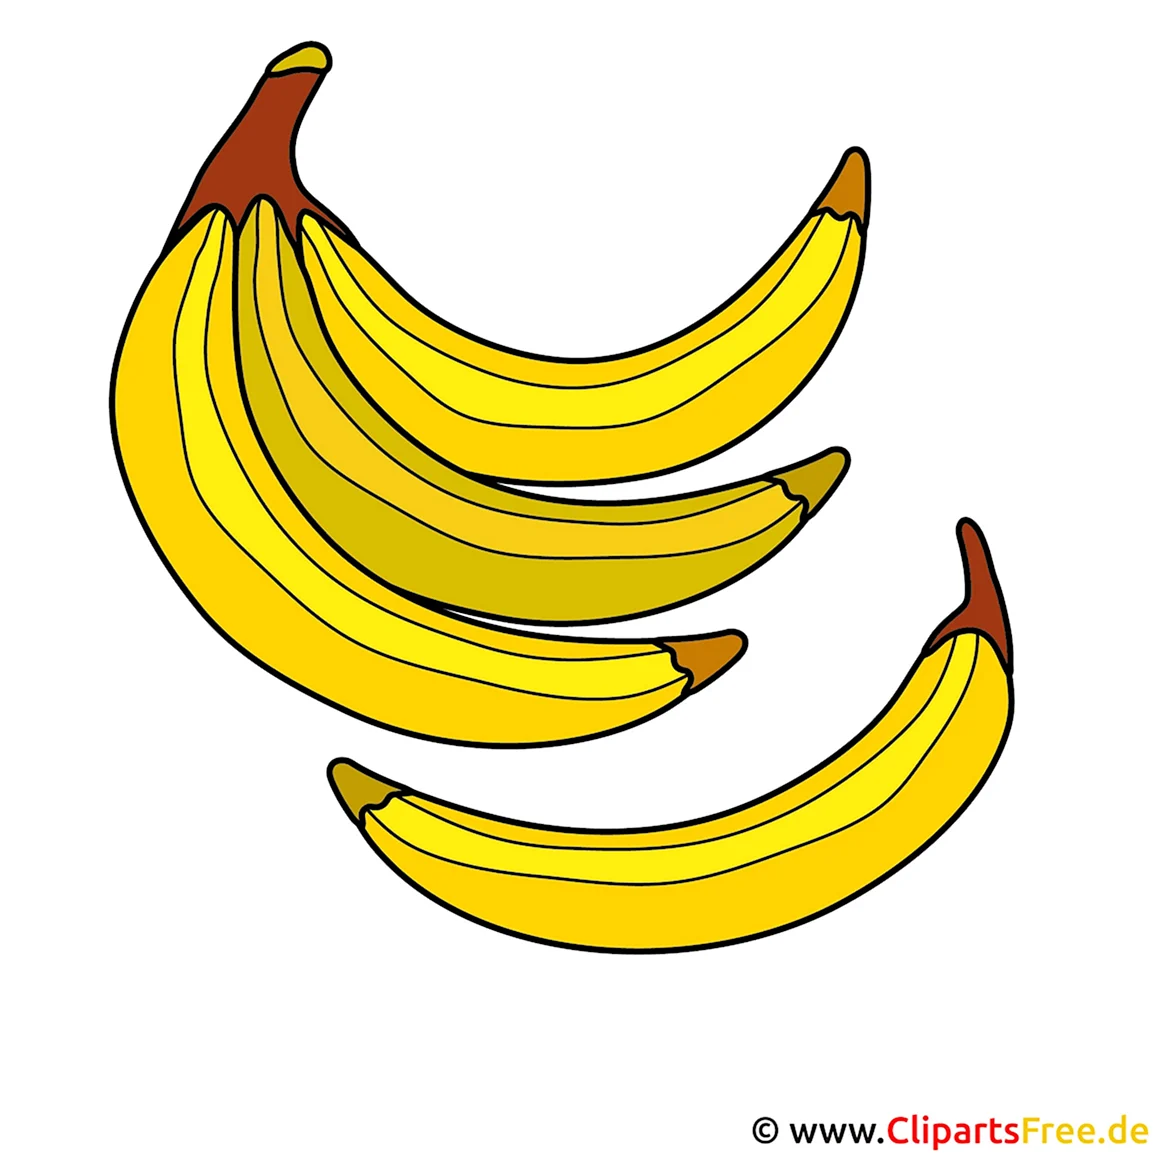 Банан клипарт